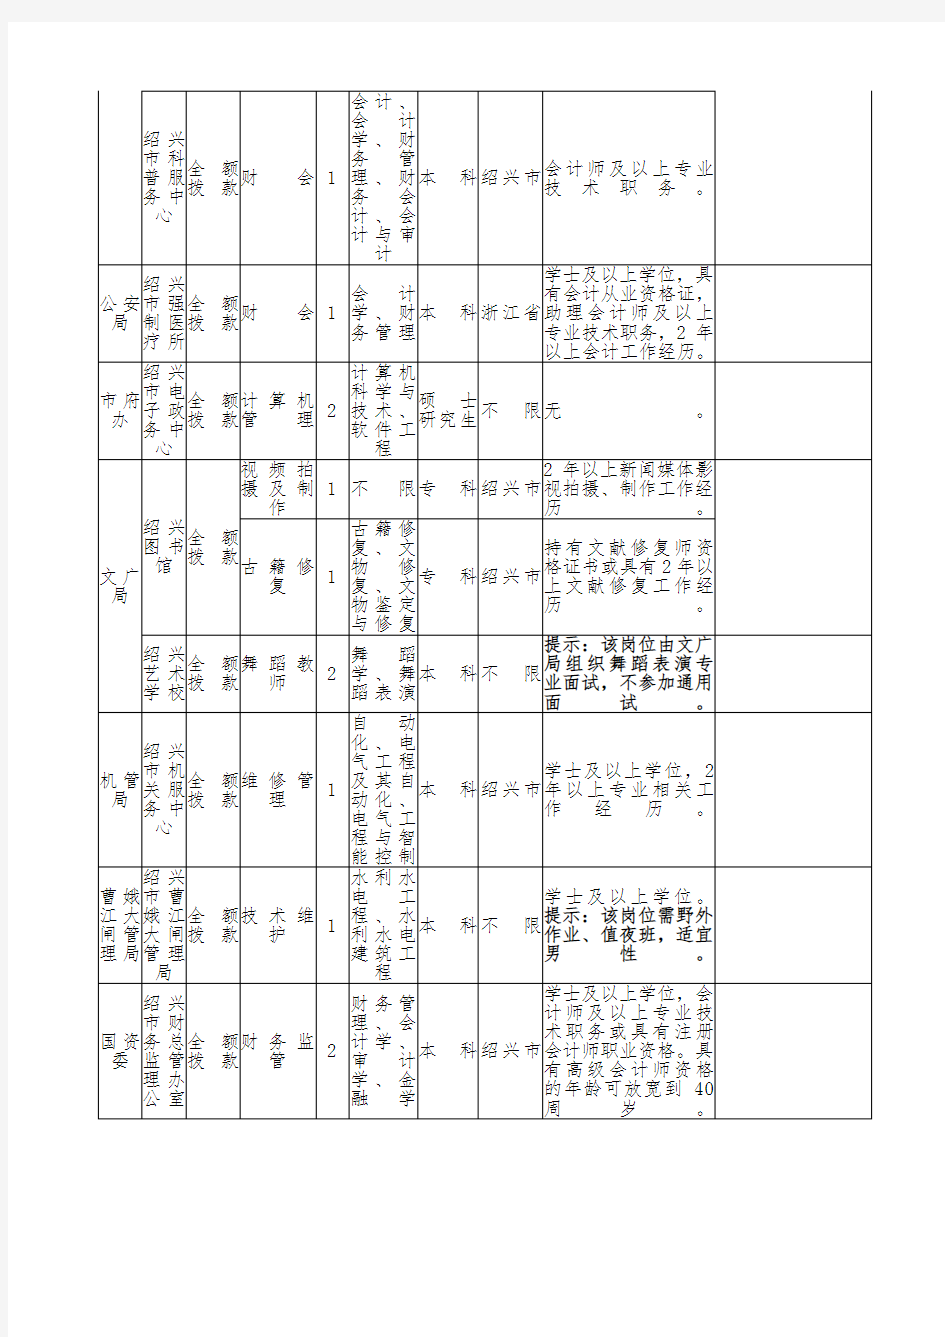 2015浙江绍兴市事业单位考试职位表